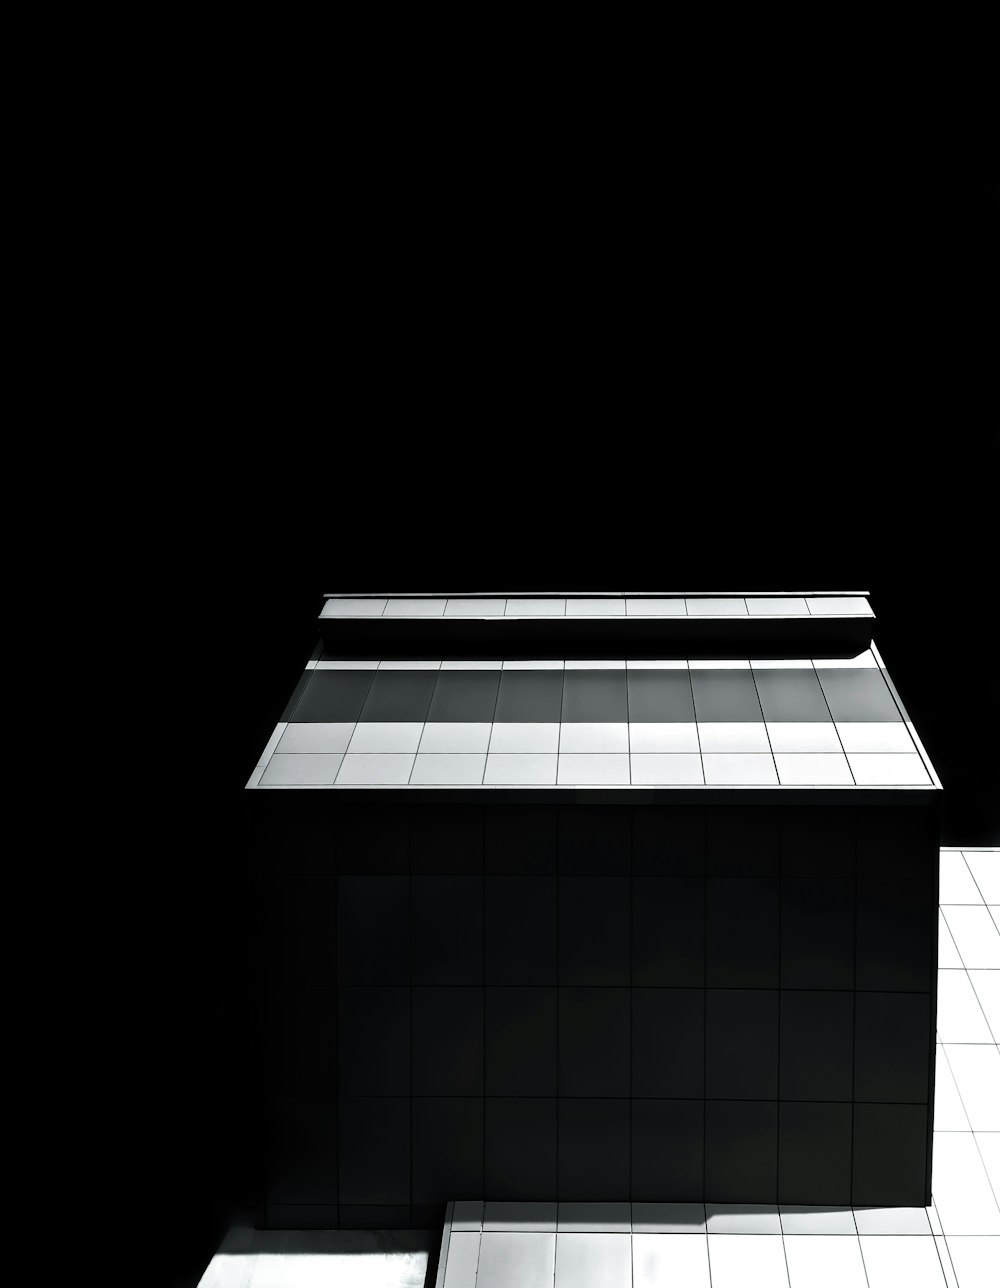 une photo en noir et blanc d’un bâtiment